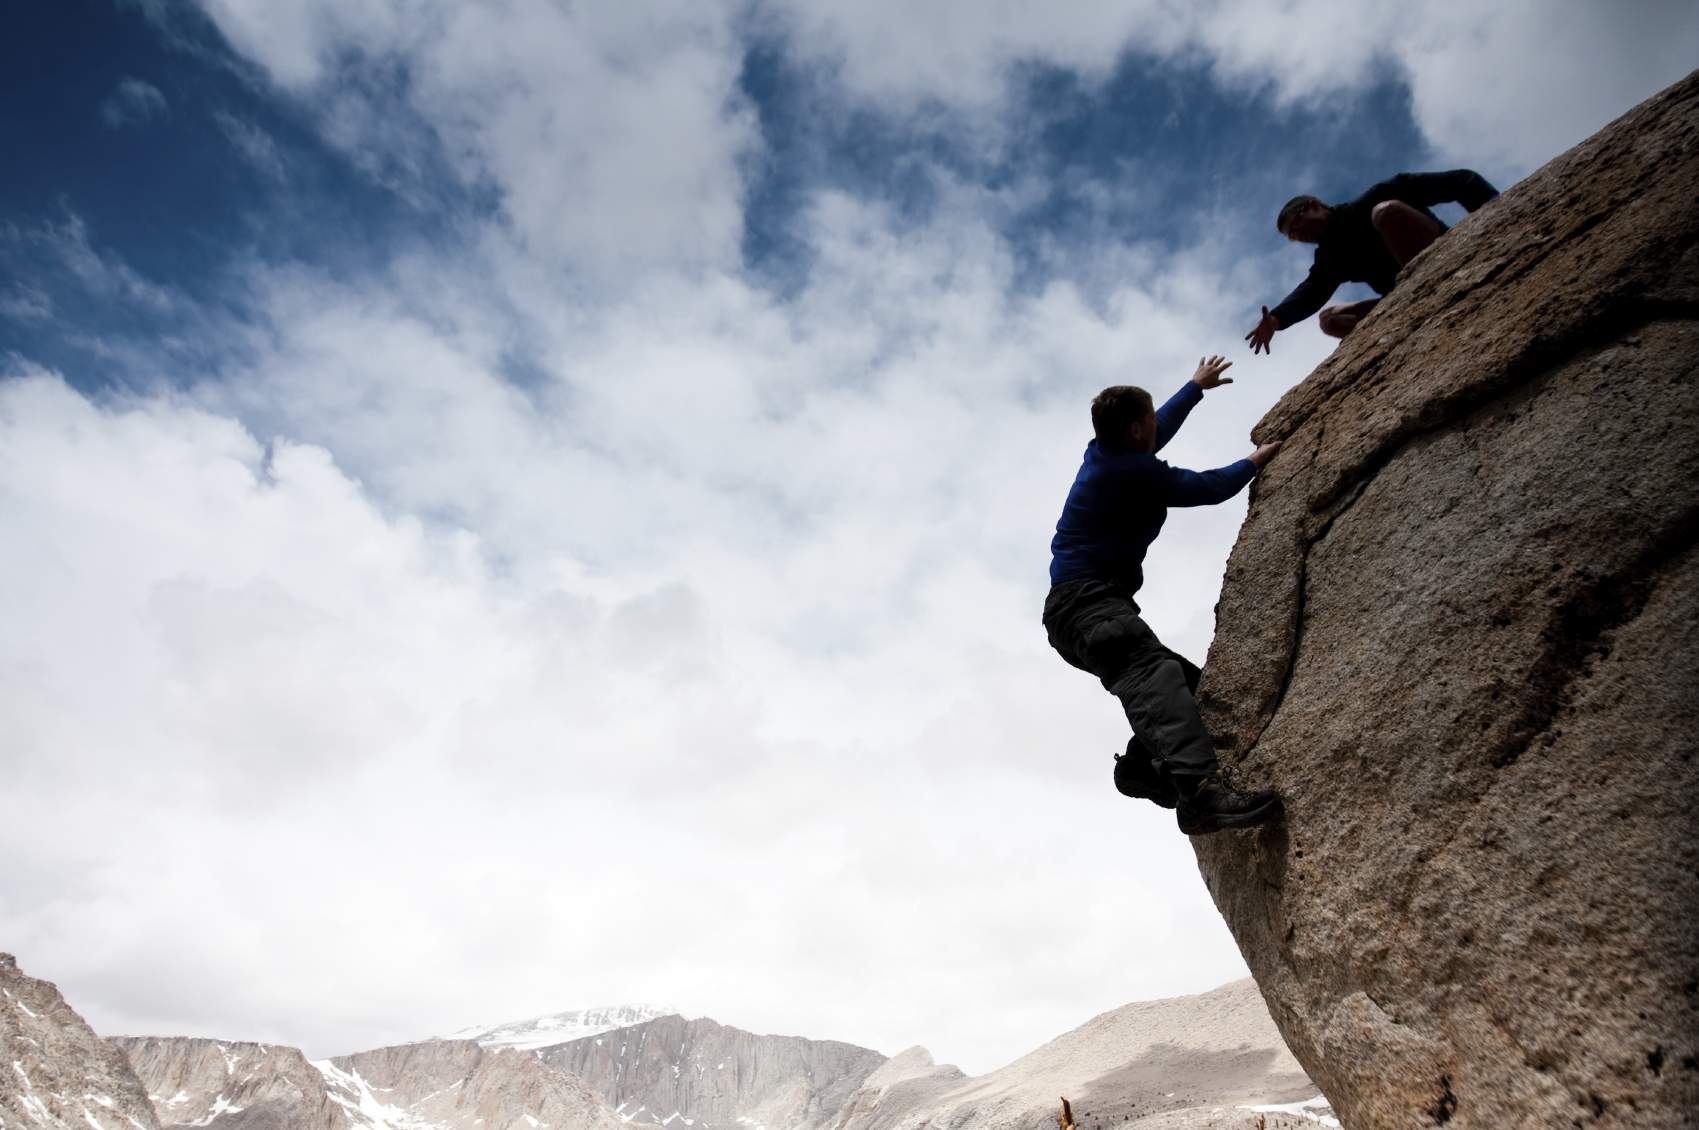 help wallpaper,climbing,rock climbing,mountaineer,adventure,sport climbing